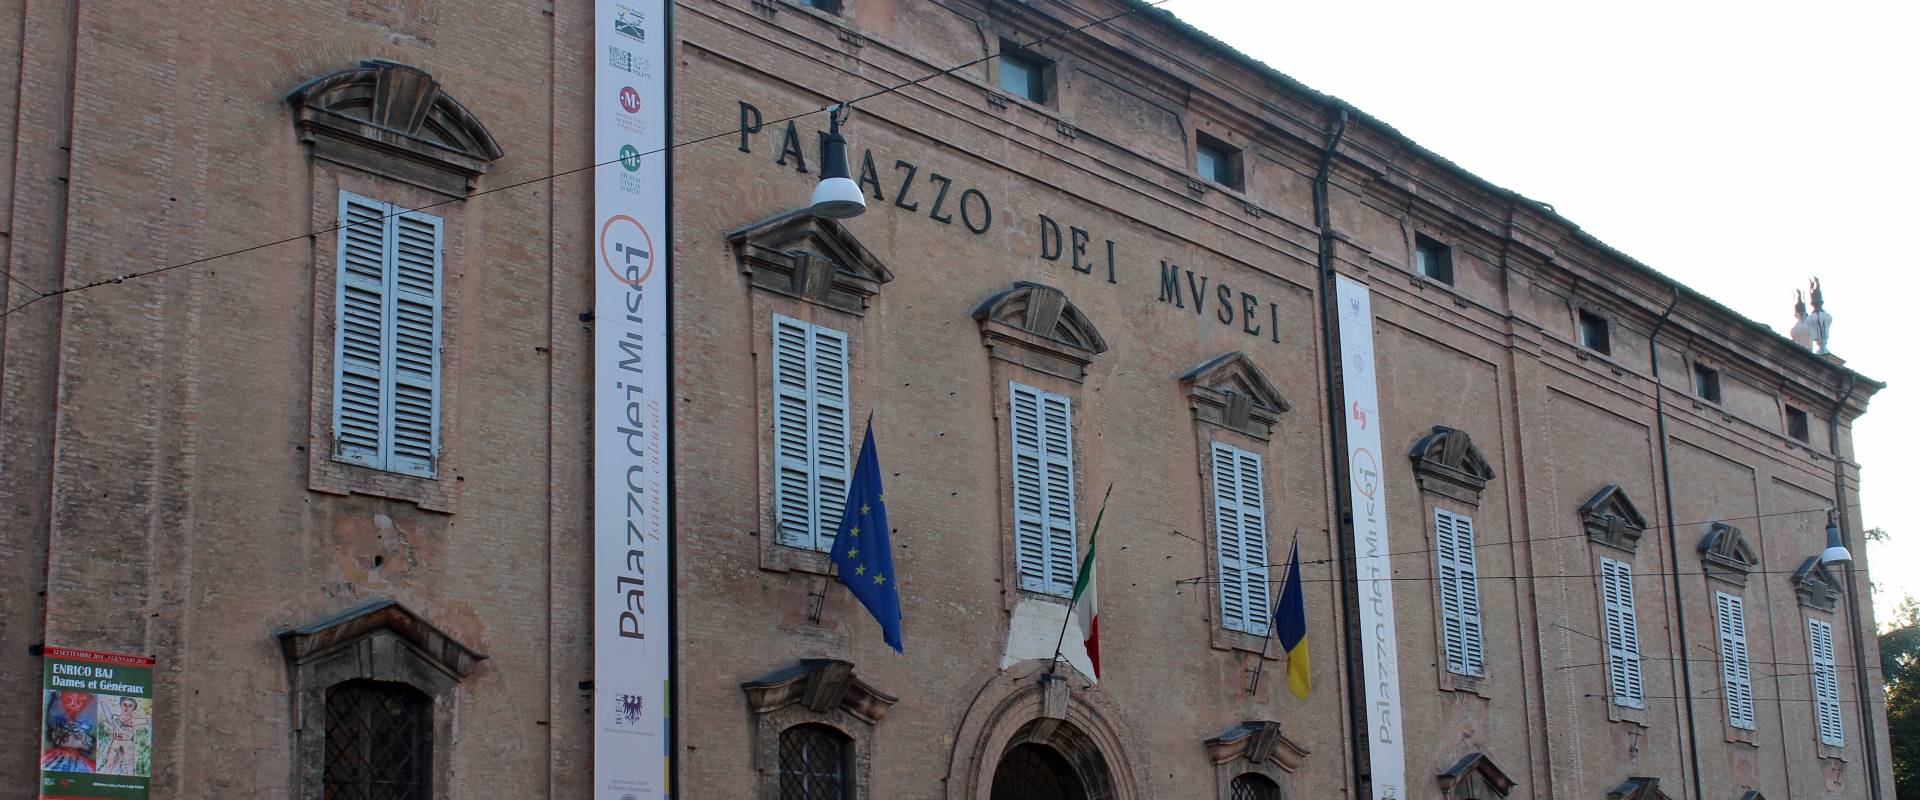 Palazzo dei Mvsei Modena foto di BeaDominianni